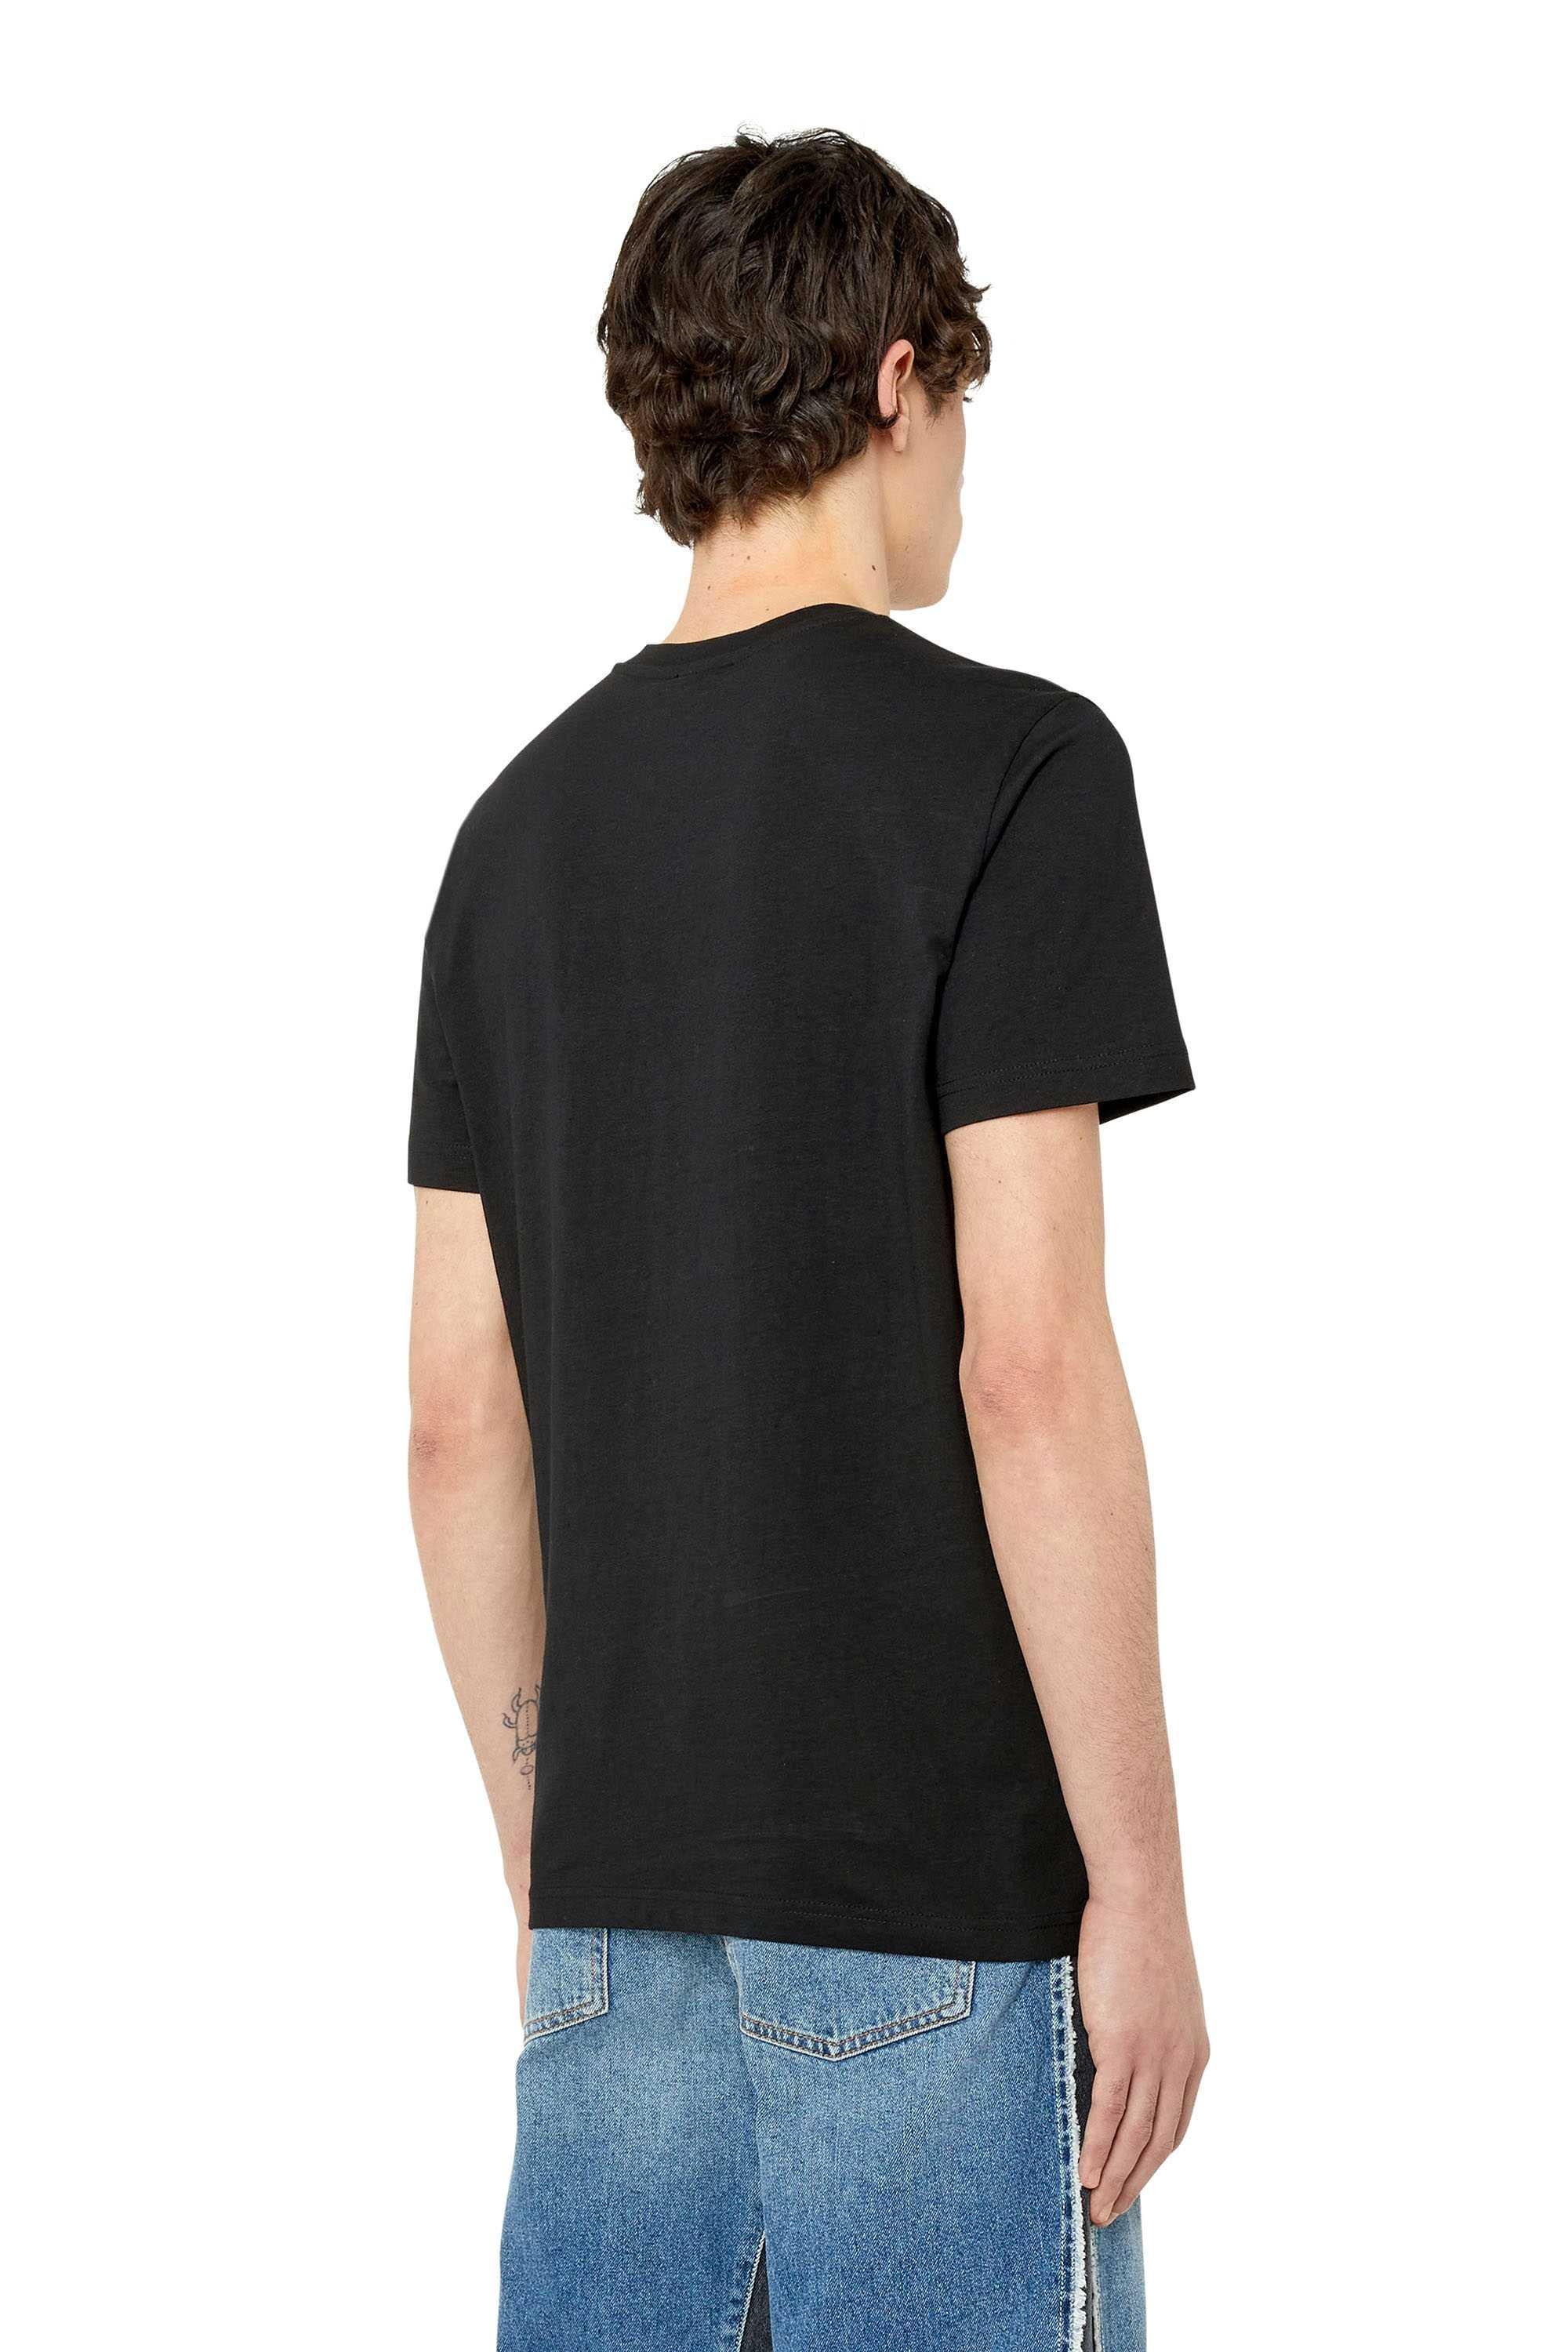 DIESEL  T-Shirt  Bequem sitzend-T-DIEGOR-K59 